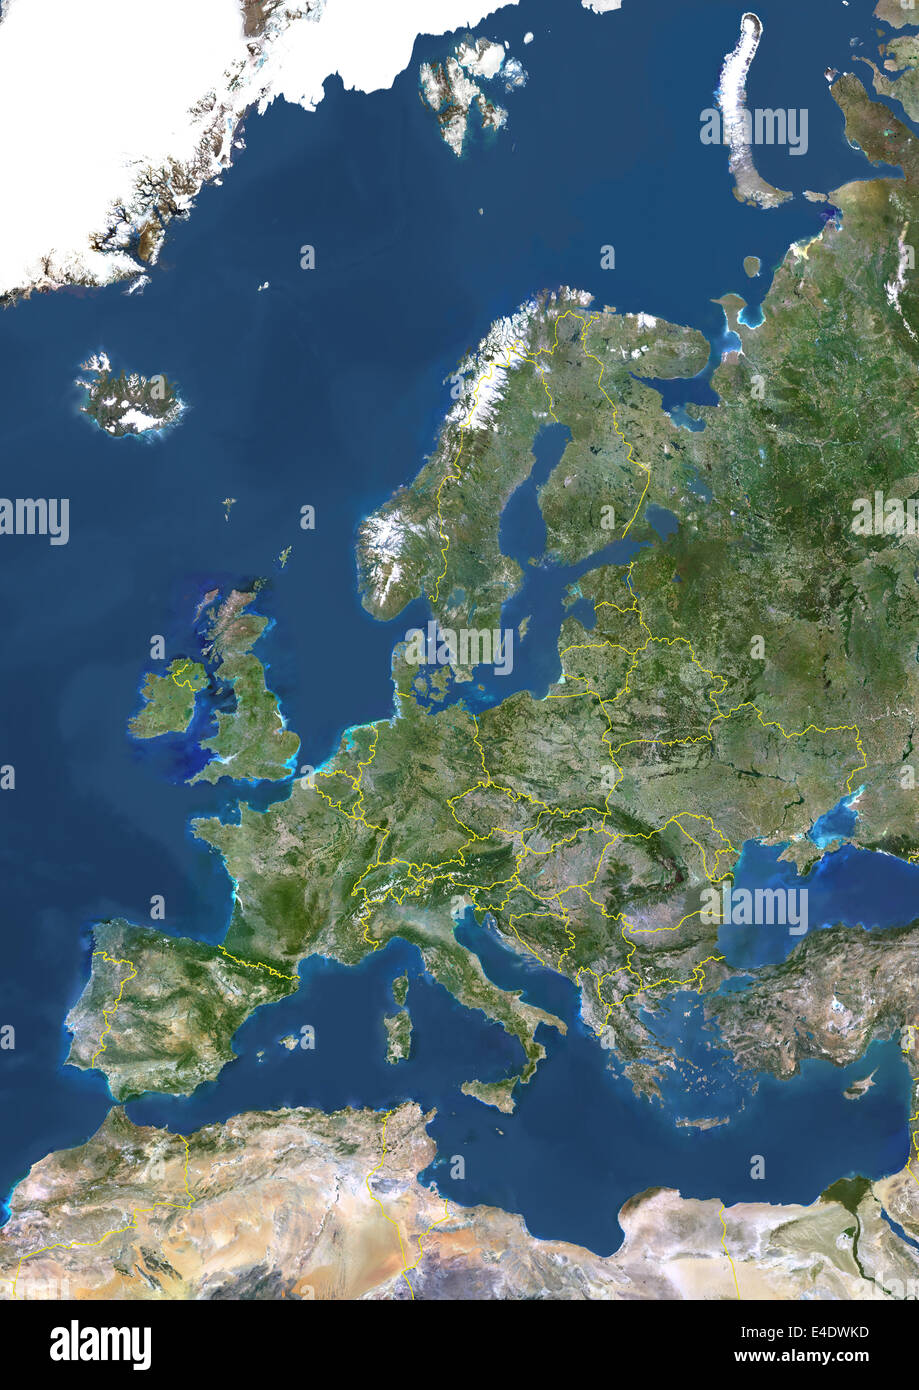 Europa con i confini, True Color immagine satellitare. True color satellitare immagine dell' Europa con i confini. Questa immagine Foto Stock